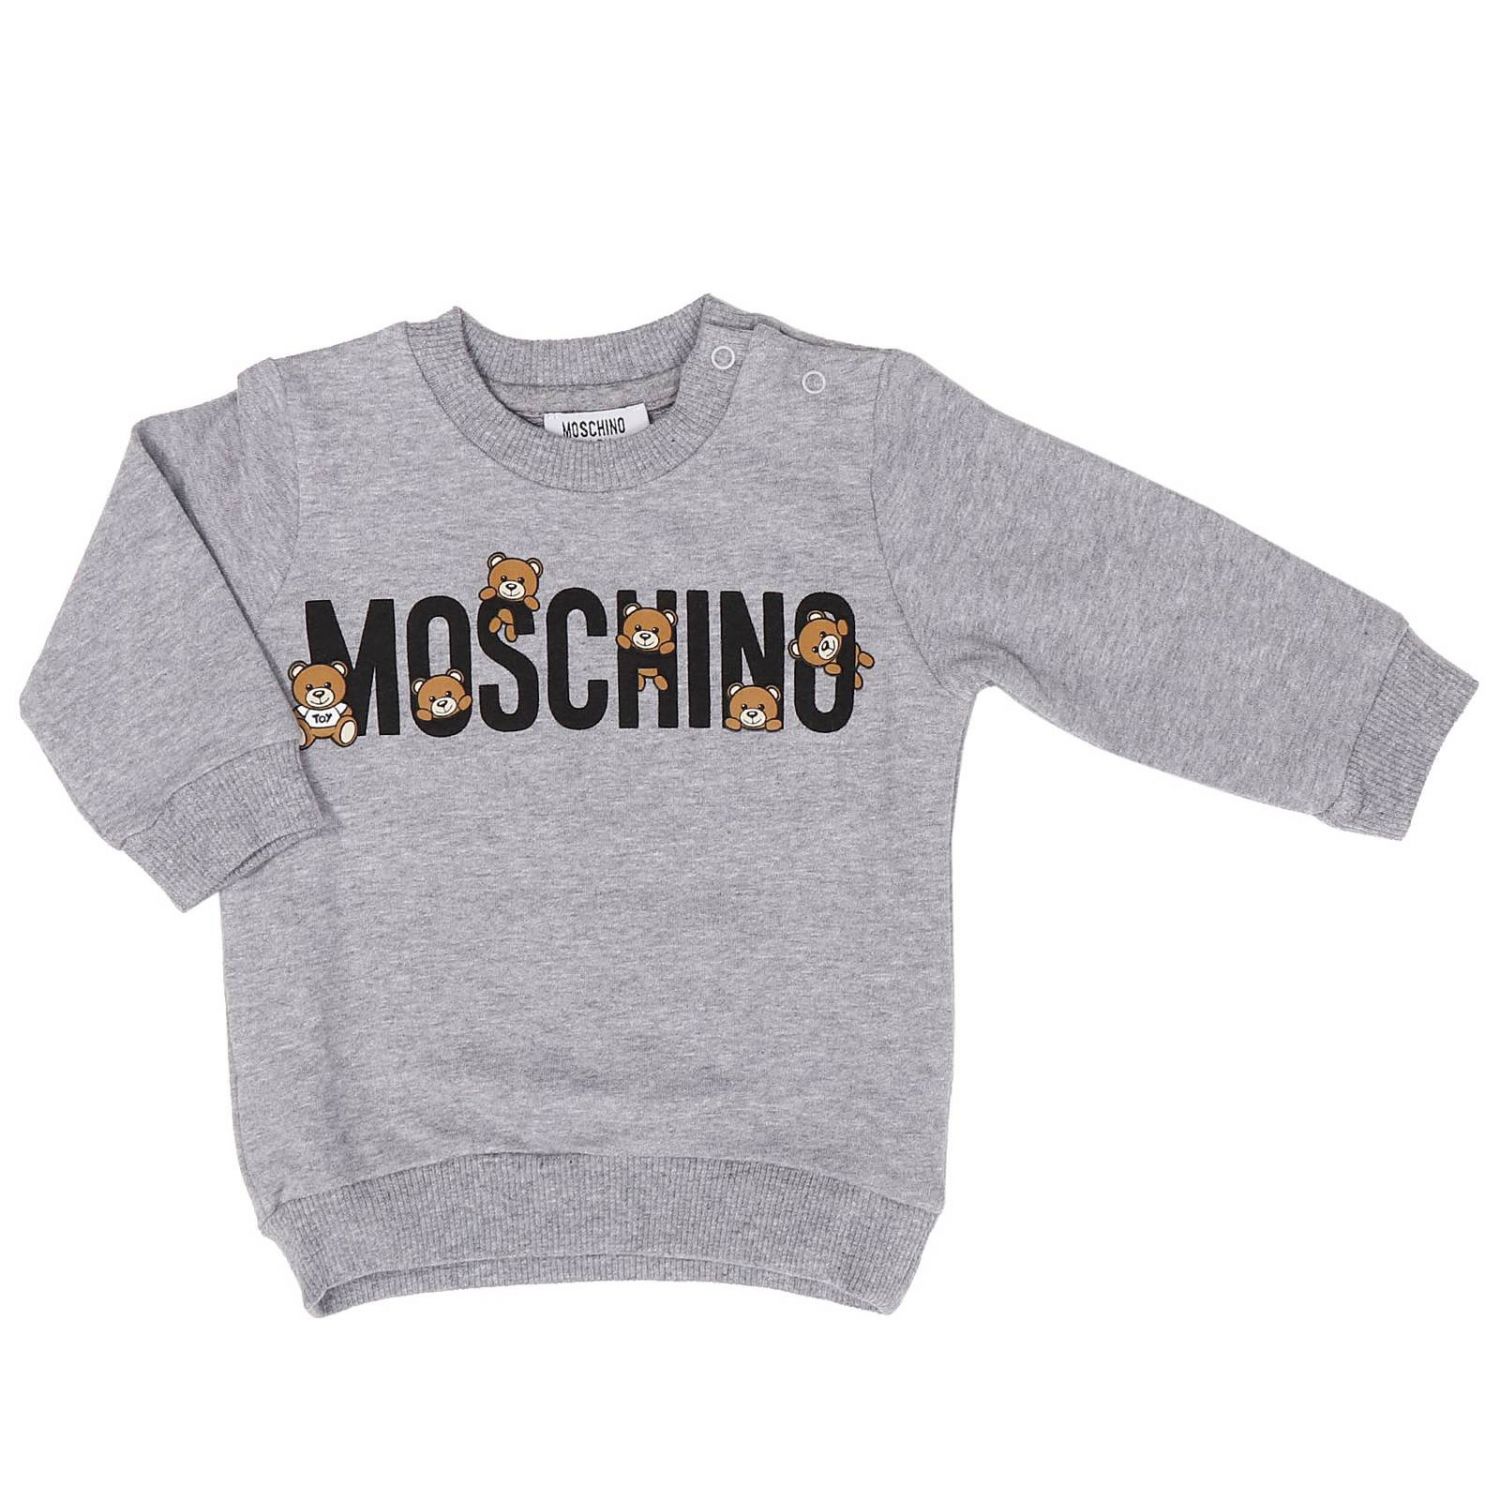 moschino baby sweater